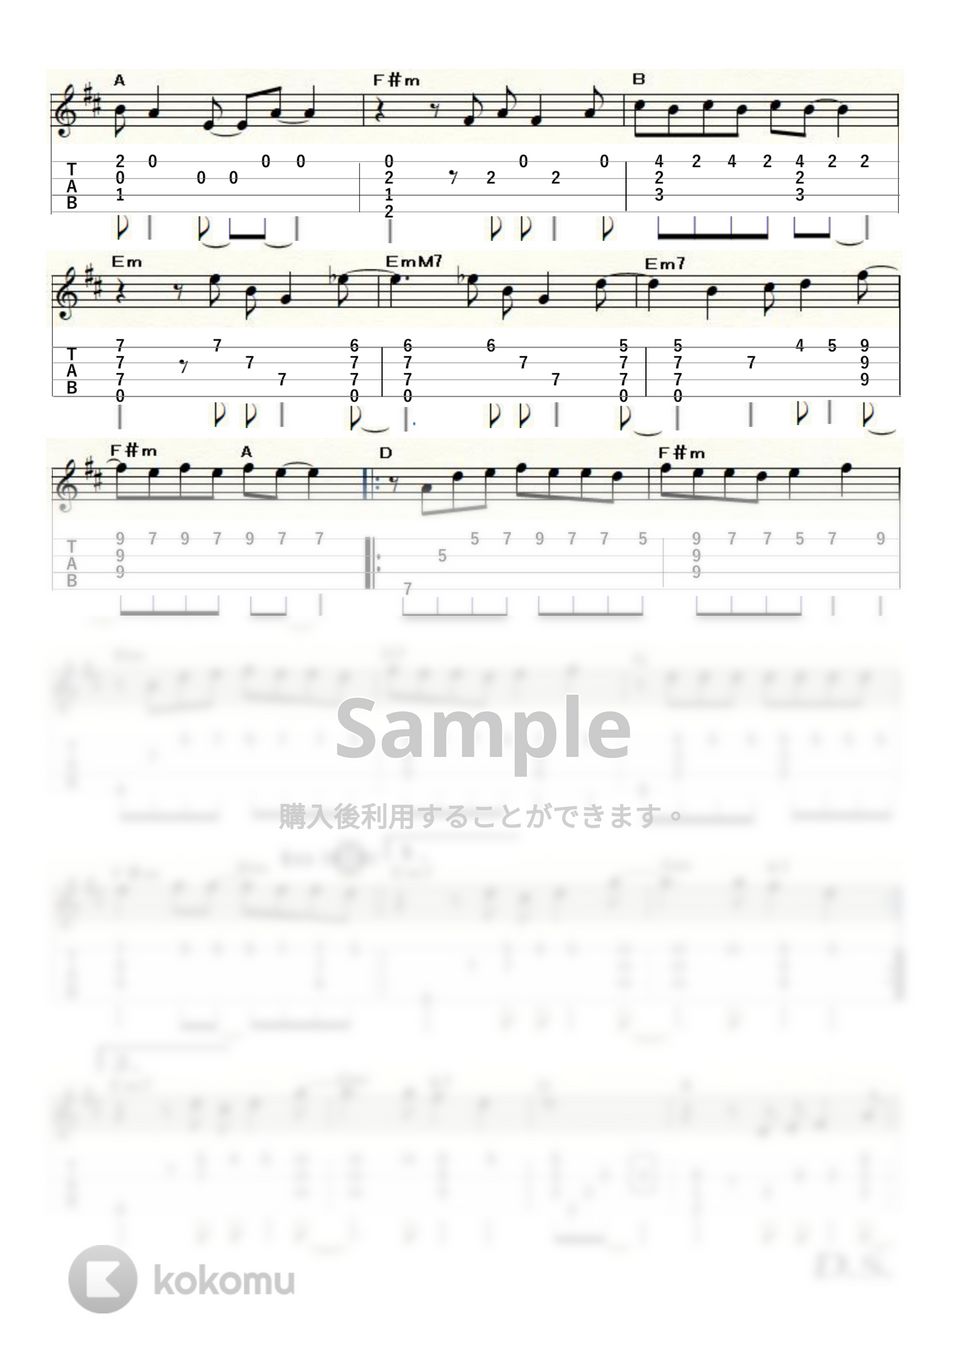 サザンオールスターズ - 真夏の果実 (ｳｸﾚﾚｿﾛ / Low-G / 上級) by ukulelepapa